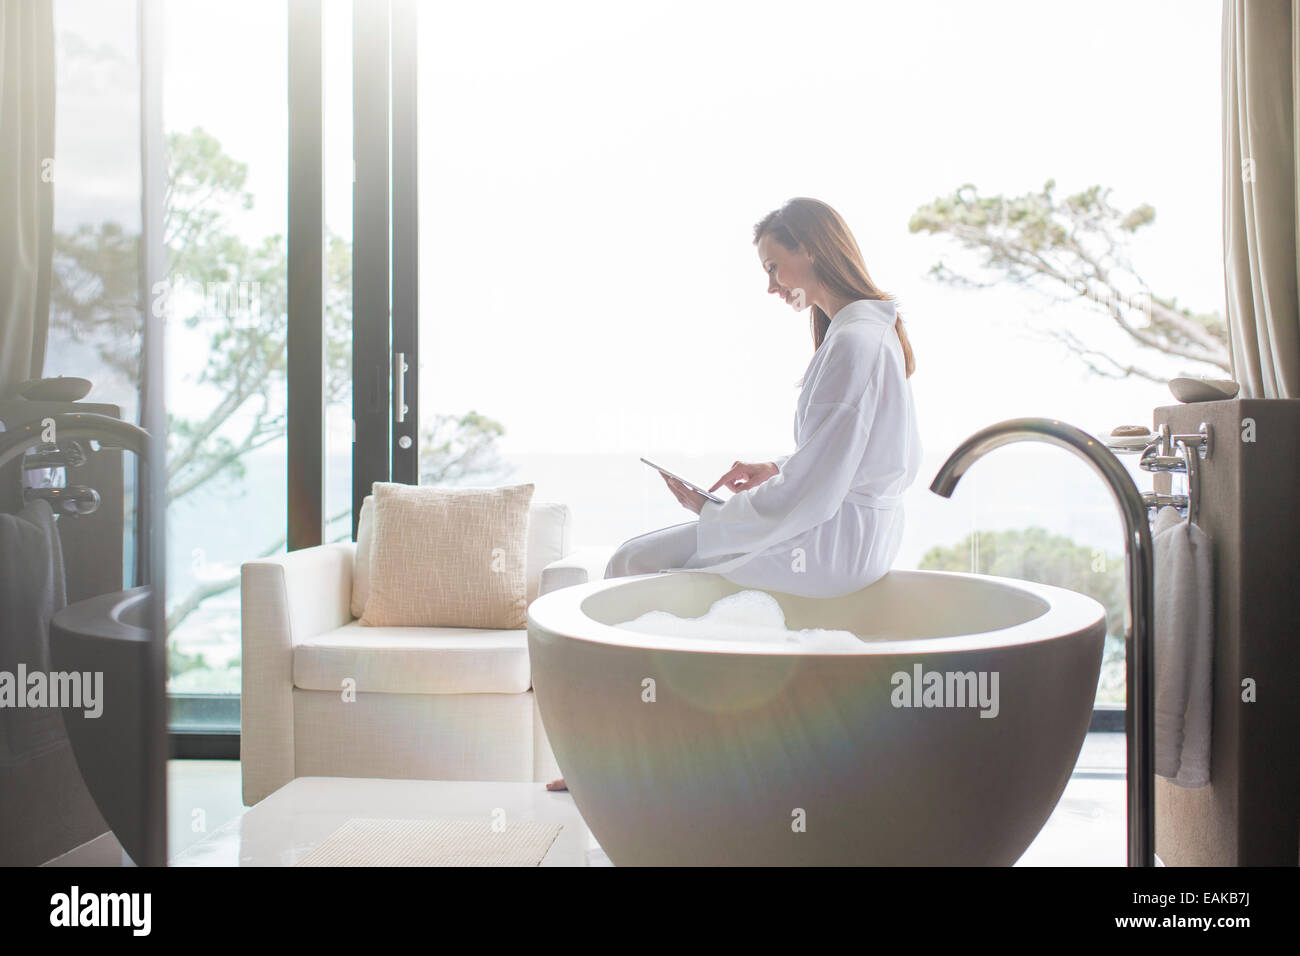 Donna che indossa accappatoio bianco seduto sul bordo della vasca da bagno moderna e con tavoletta digitale Foto Stock